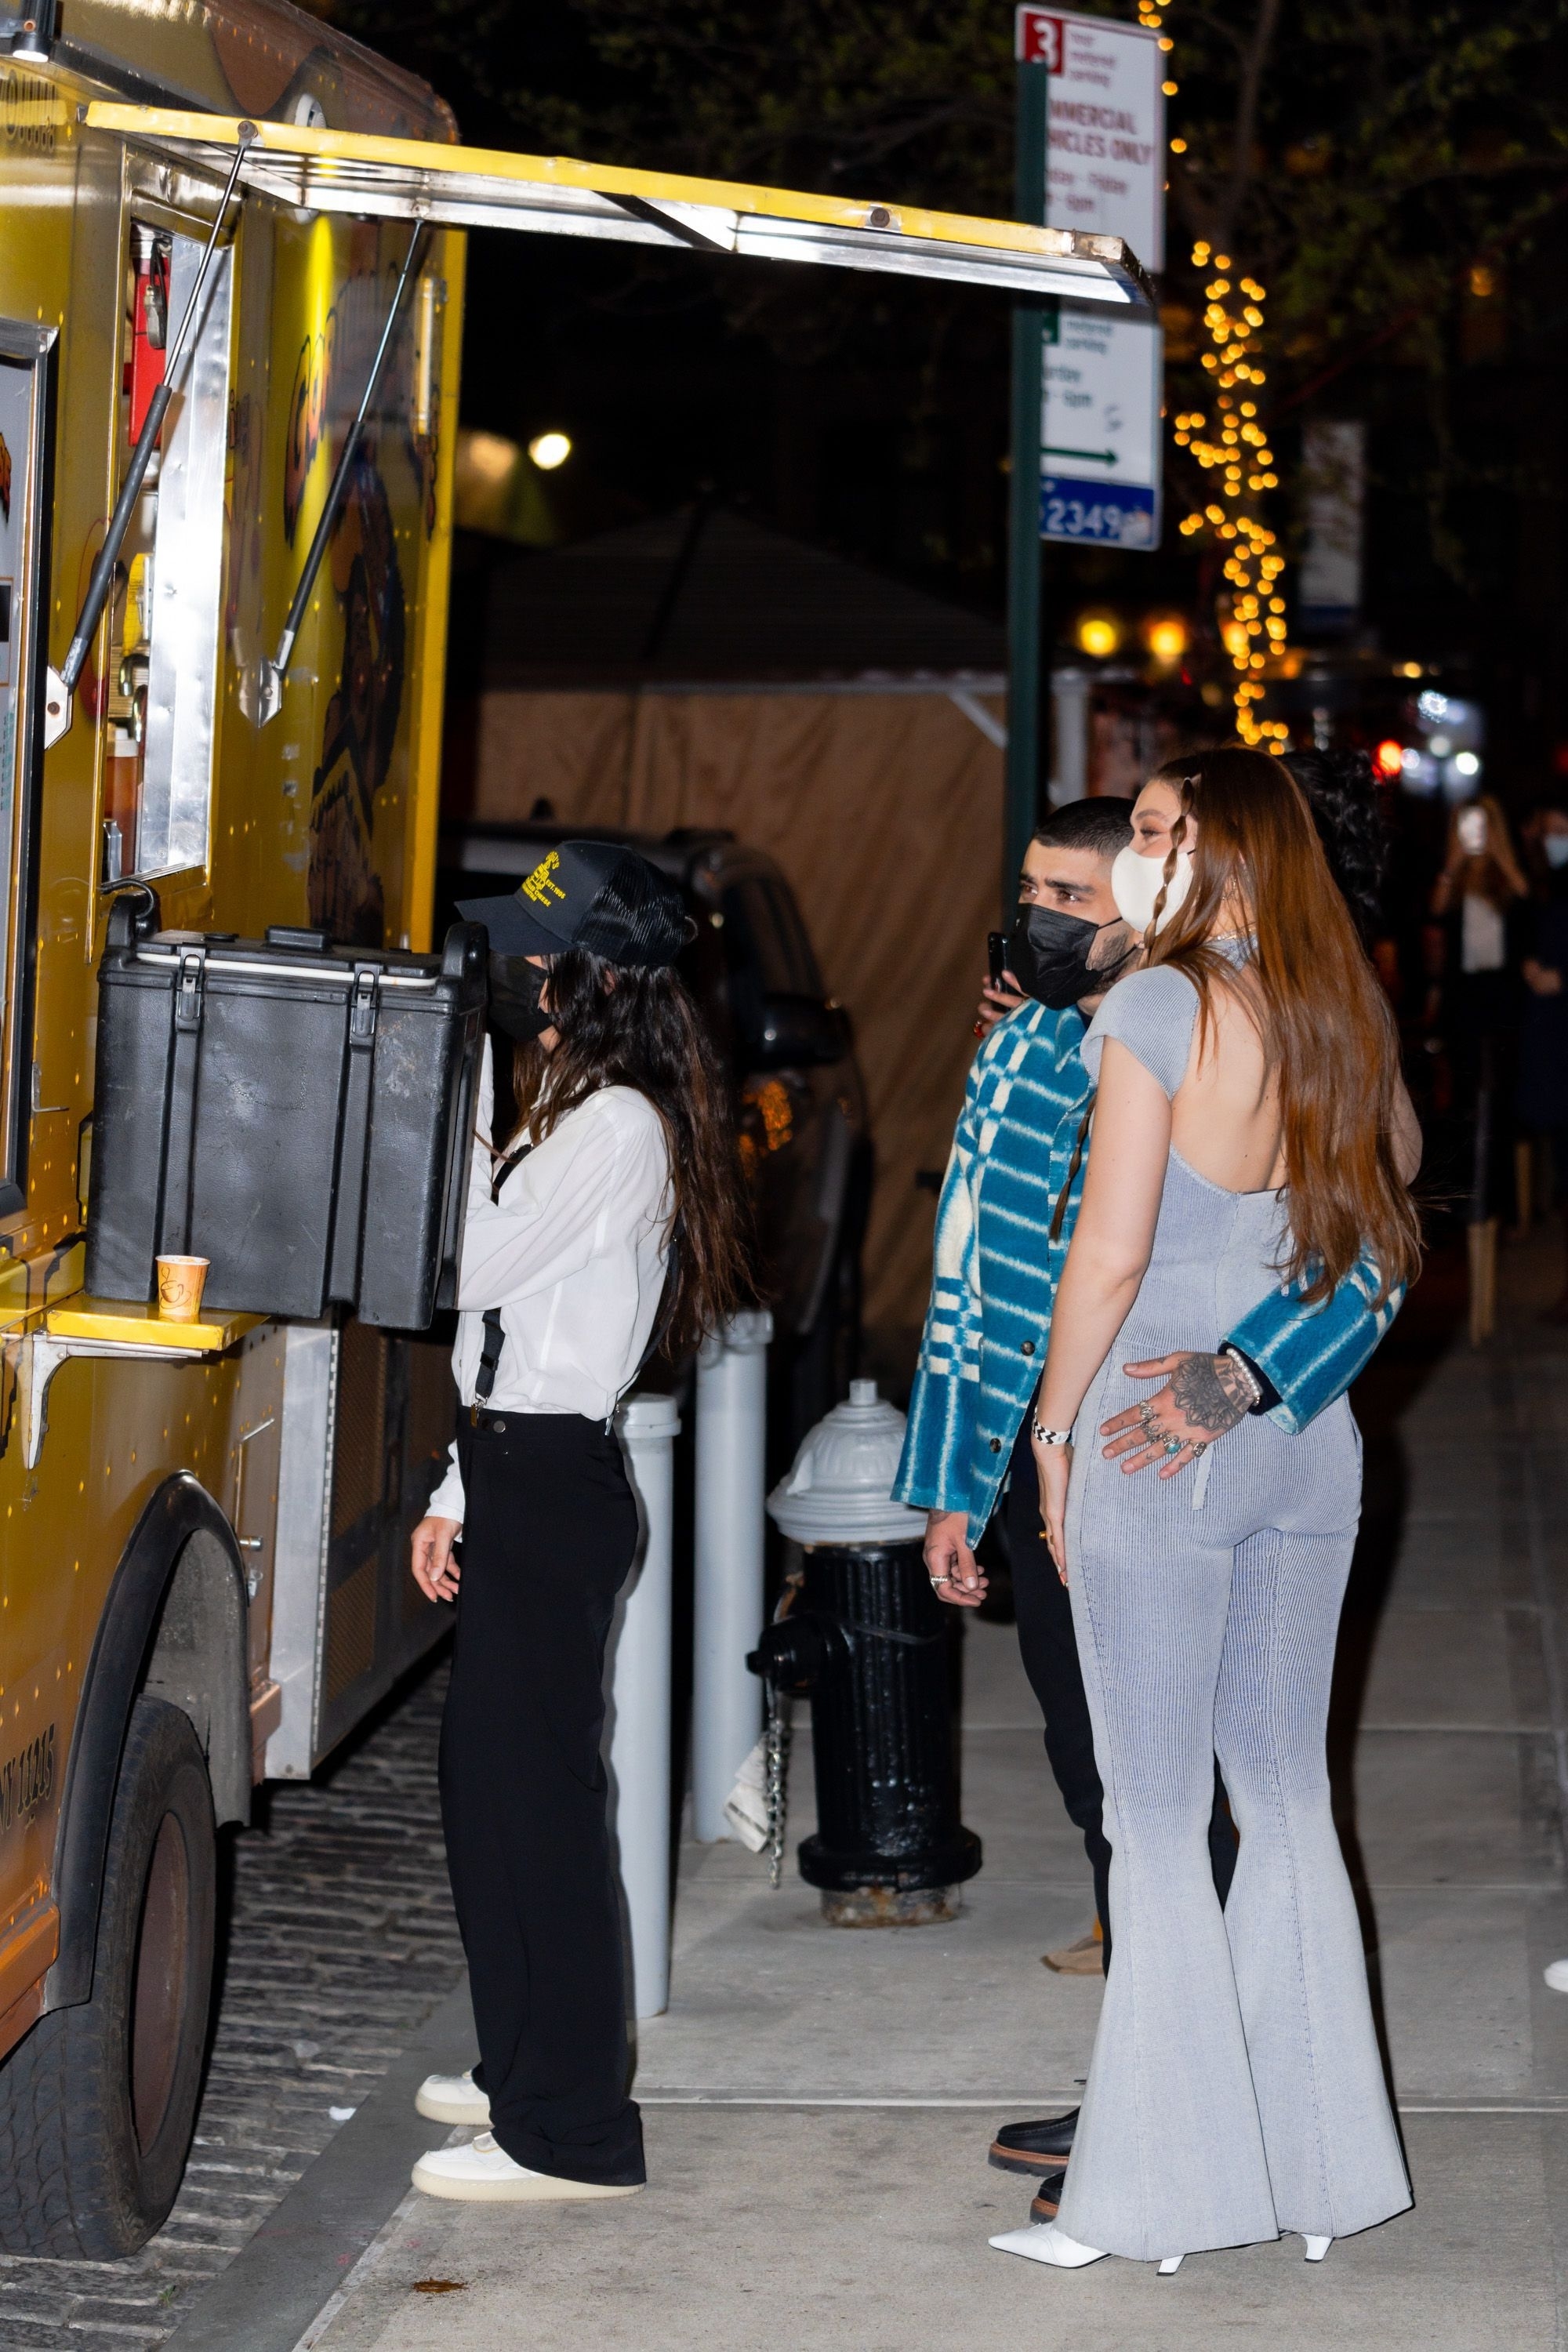 Zayn Malik and Gigi Hadid waiting at a food cart